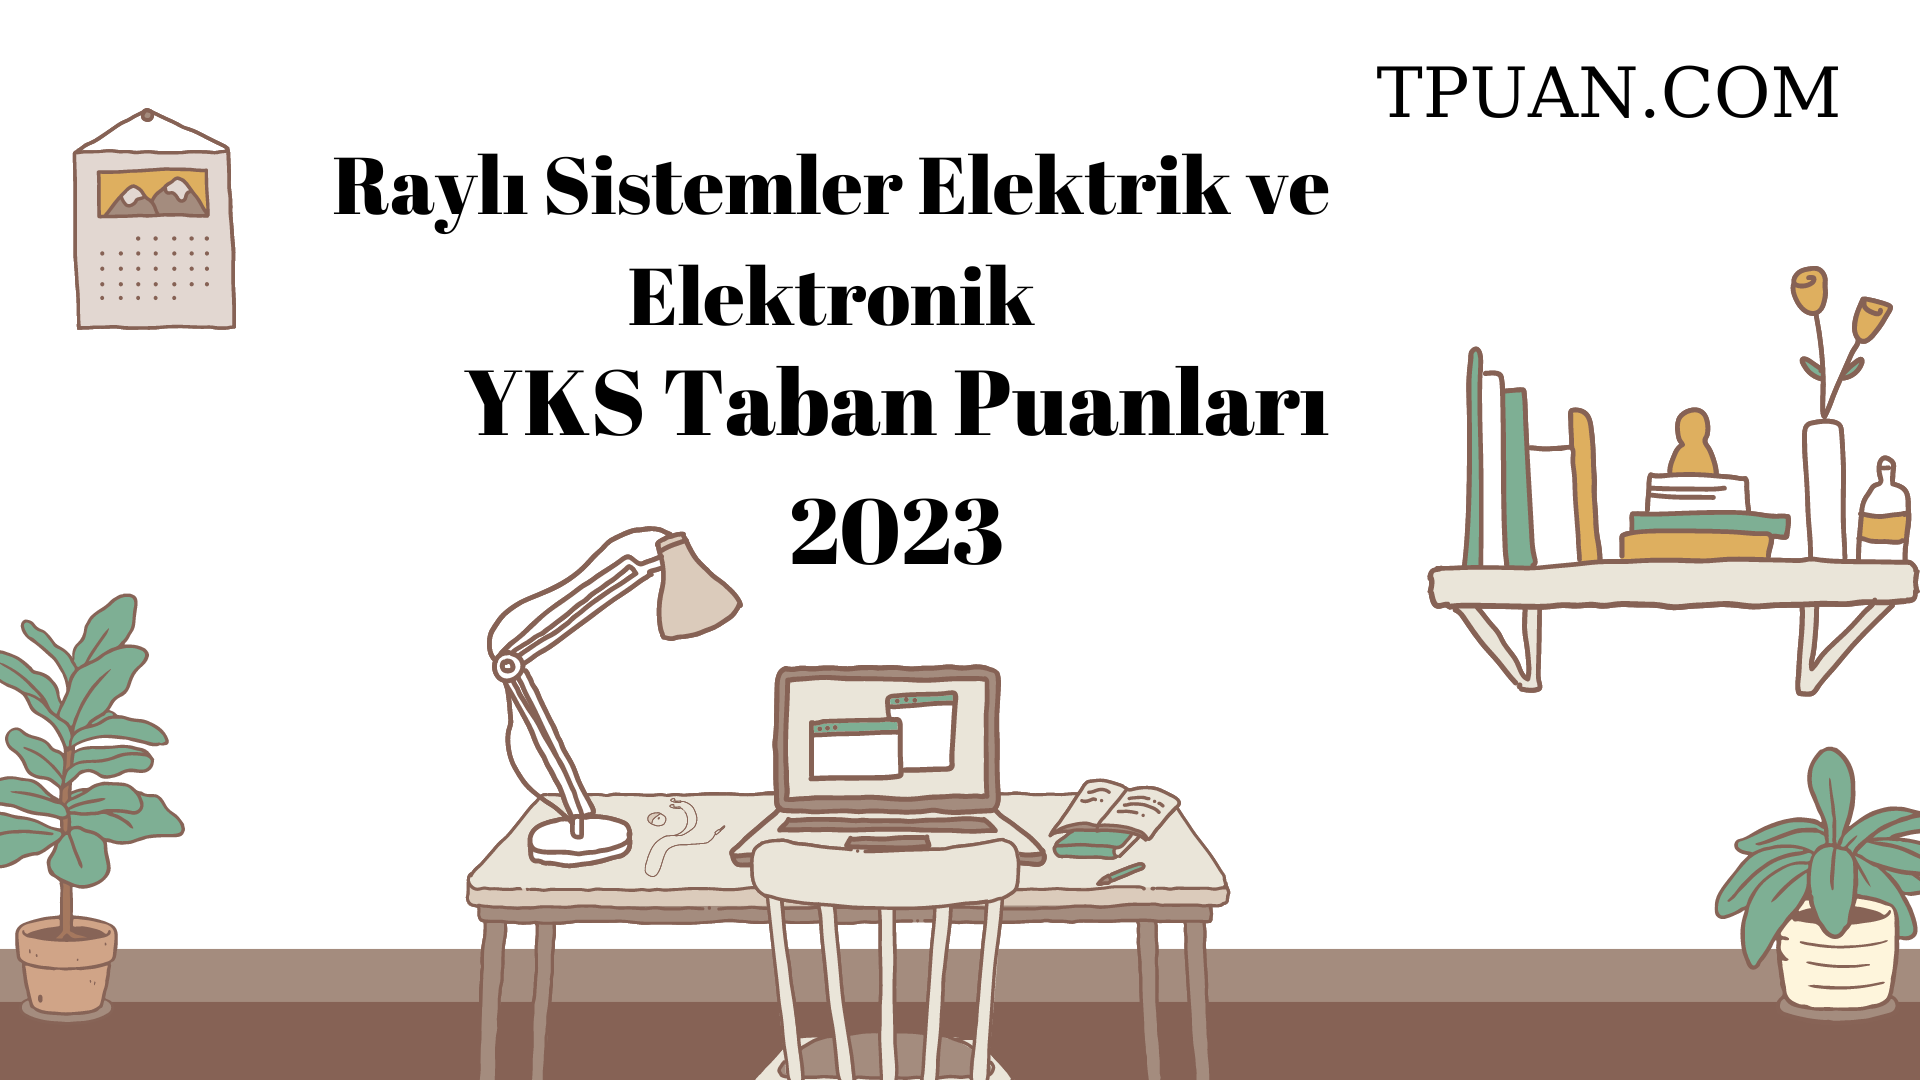  Raylı Sistemler Elektrik ve Elektronik YKS Taban Puanları 2023